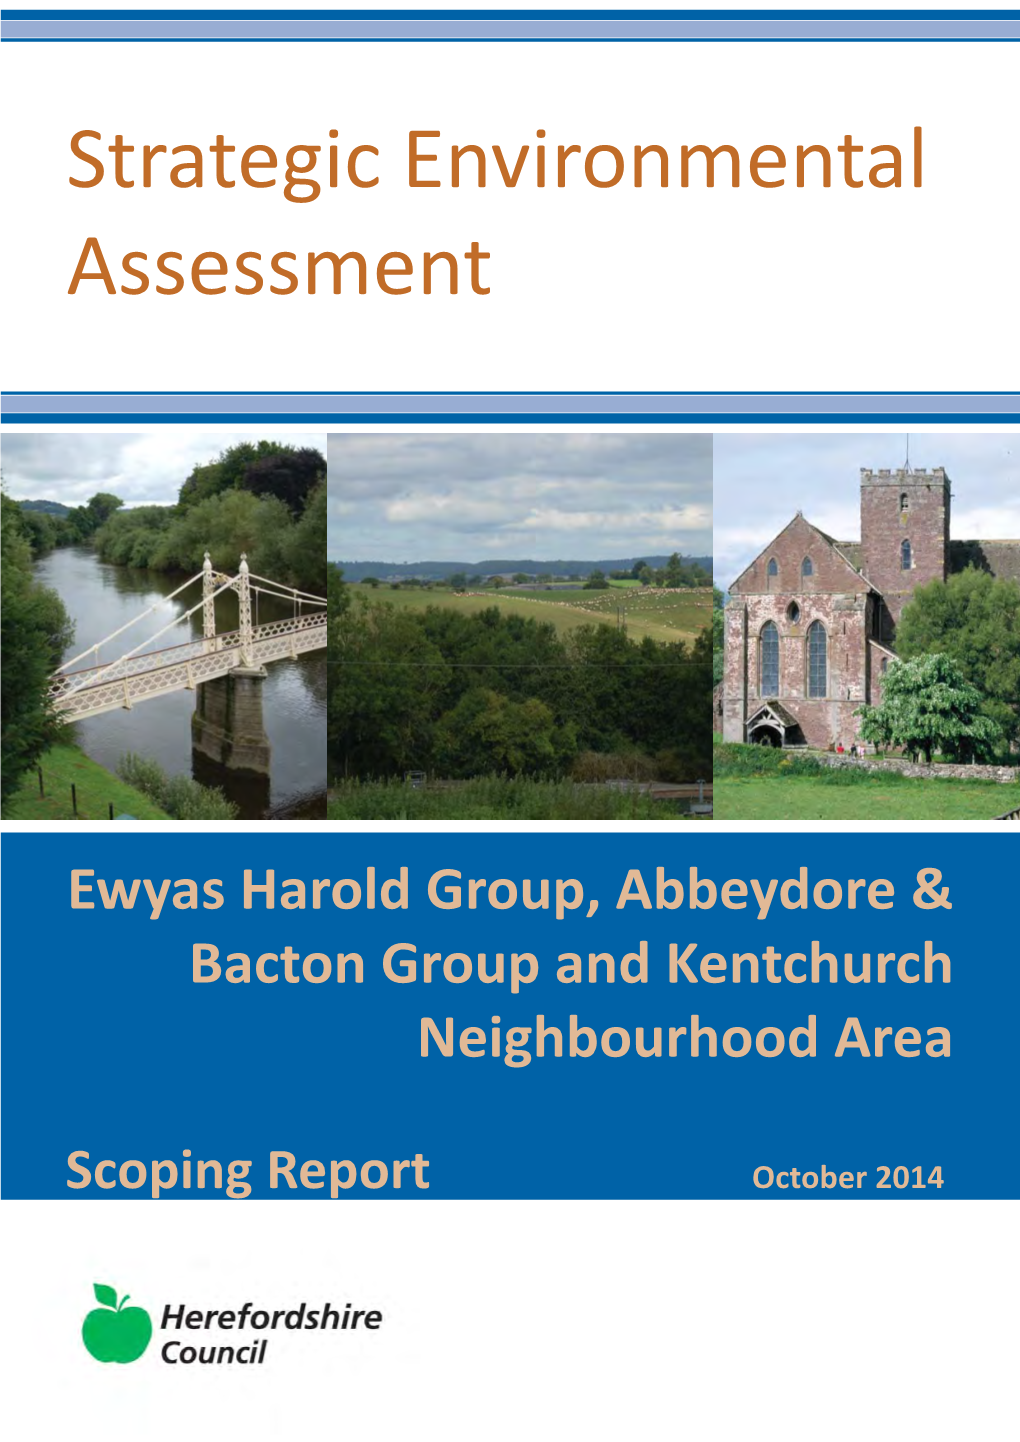 Abbeydore and Bacton, Ewyas Harold Group and Kentchurch Strategic